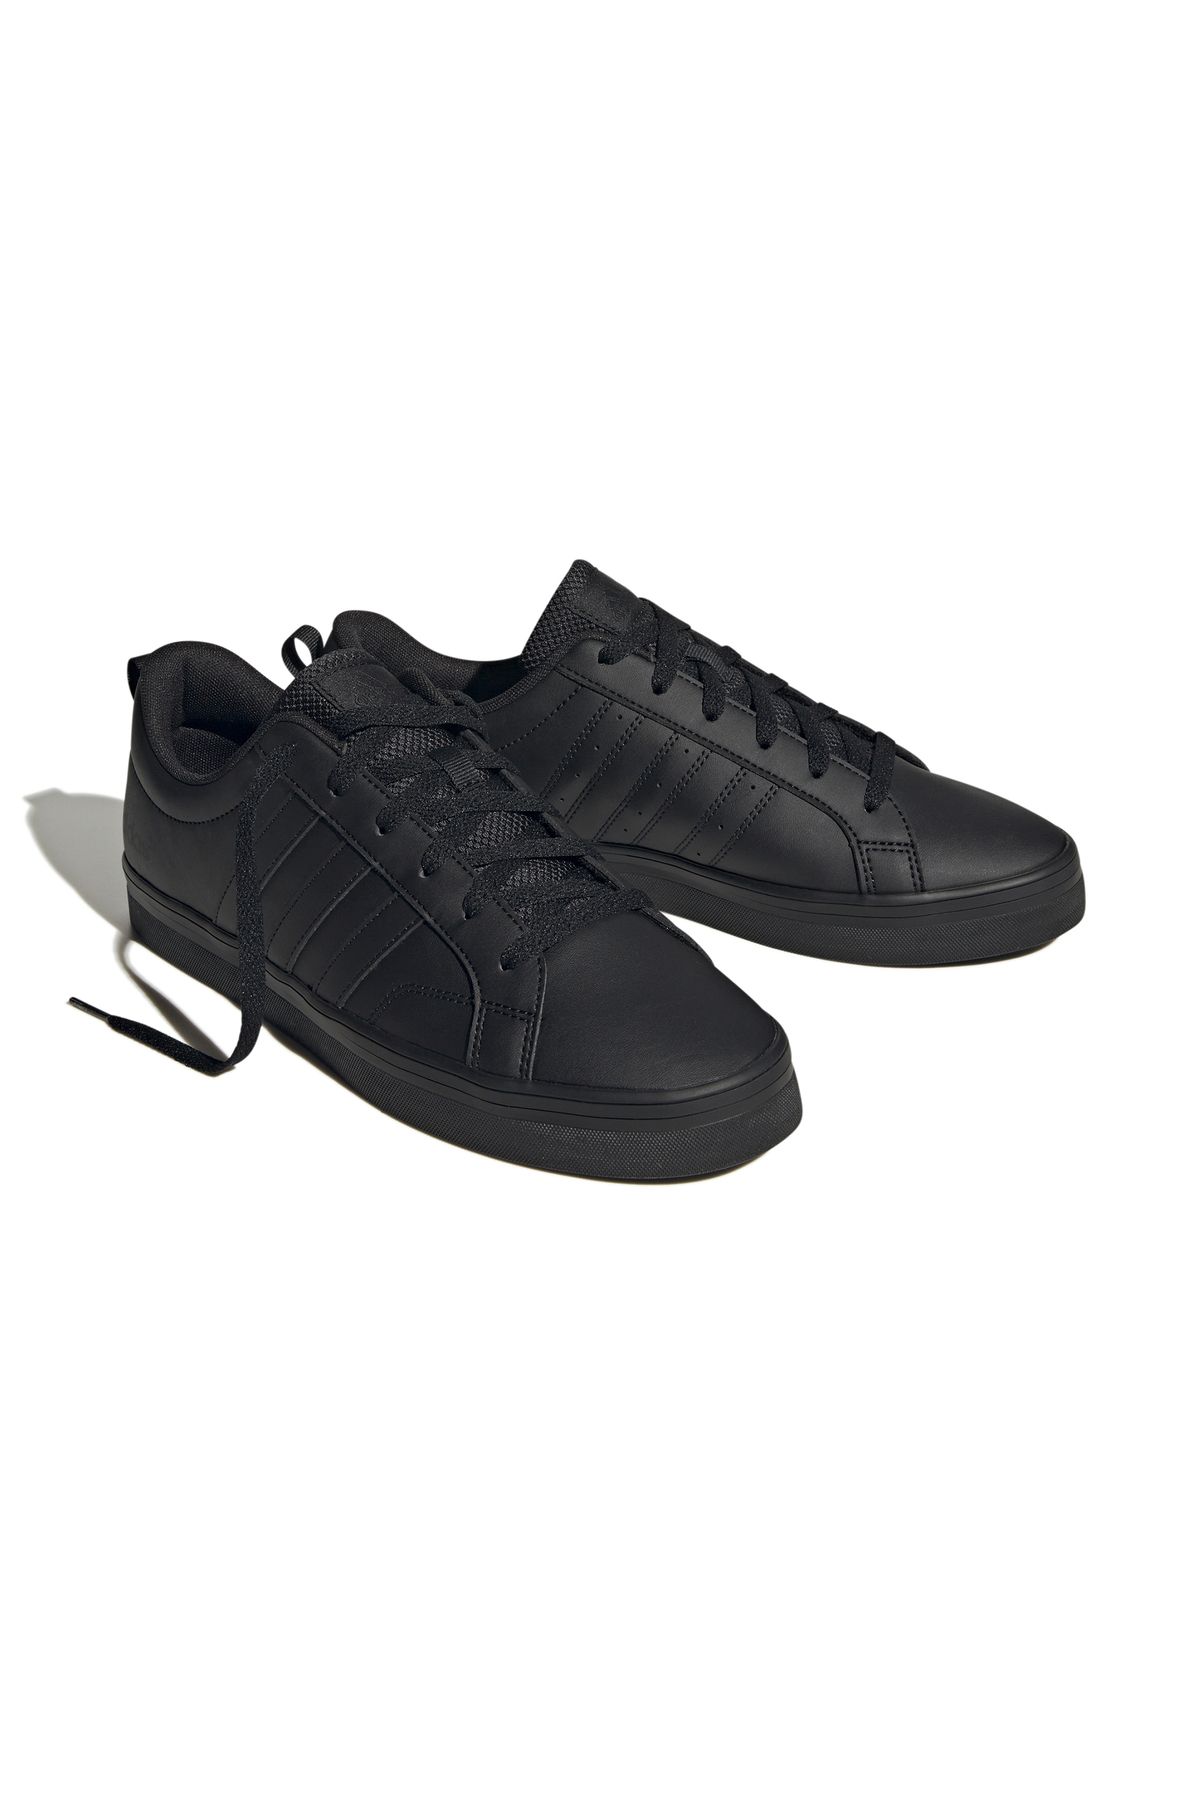 adidas Vs Pace 2.0 Erkek Günlük Ayakkabı Spor Sneaker